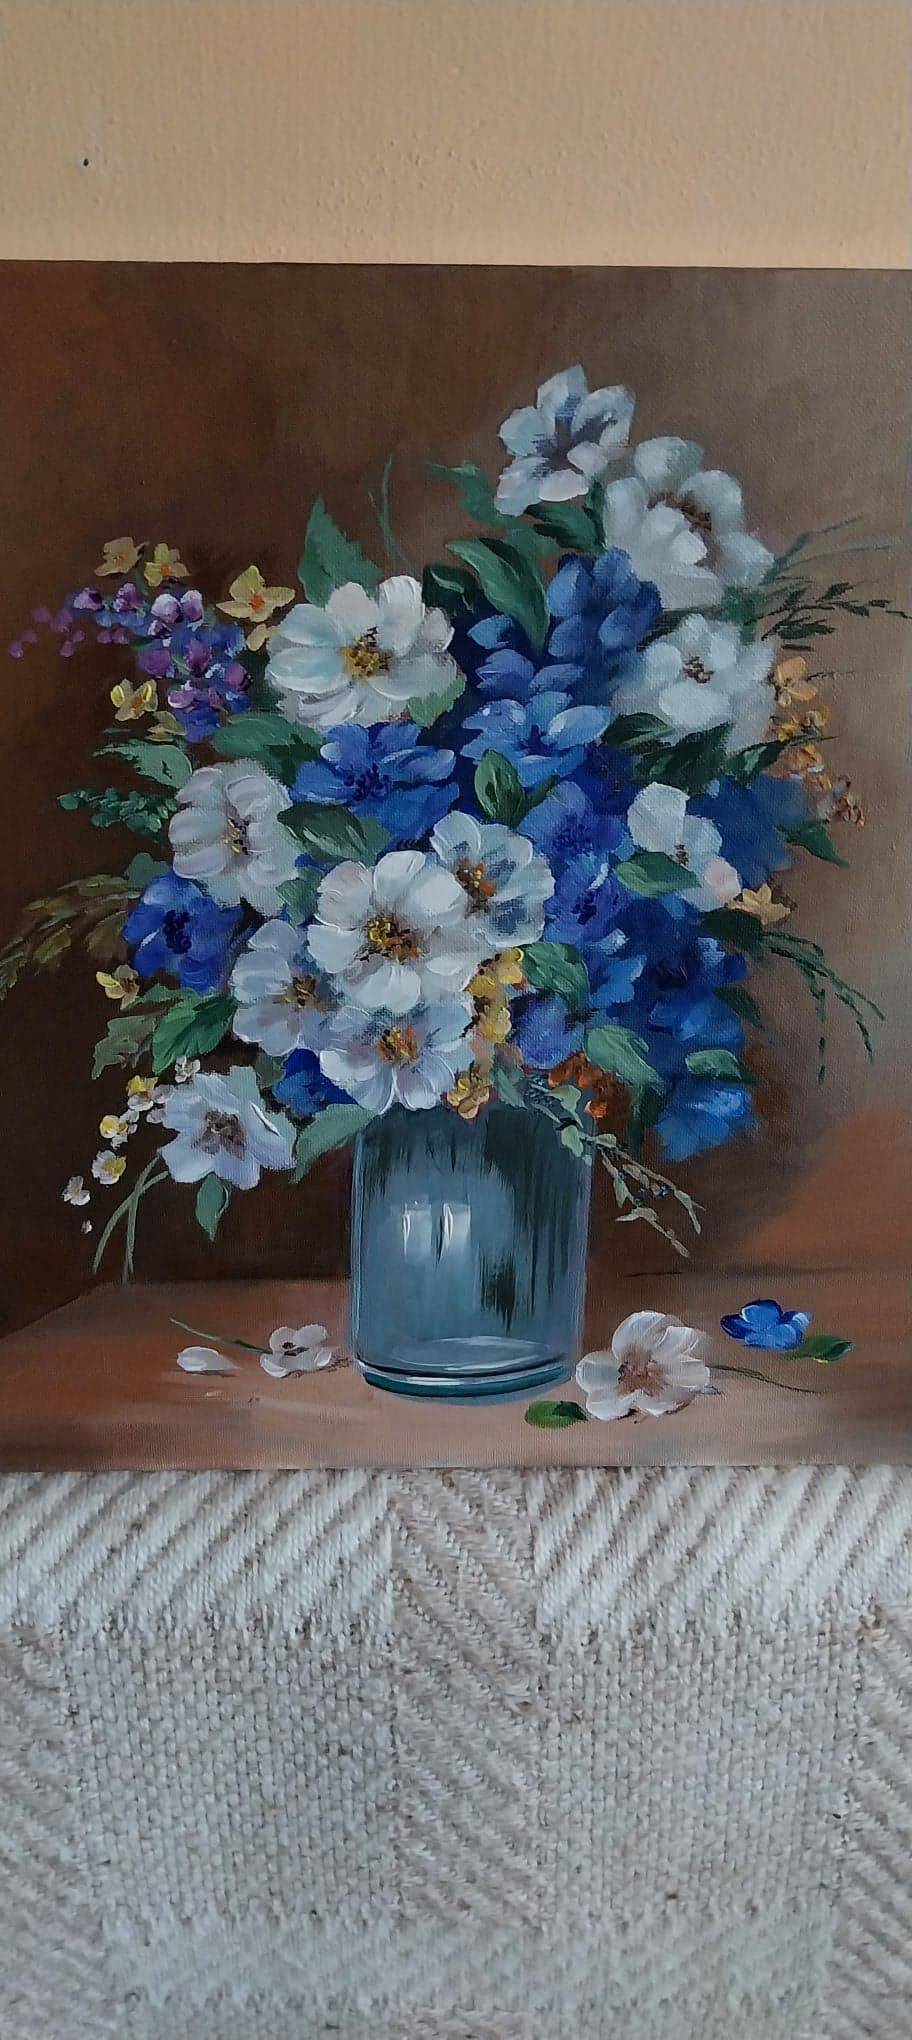 Poza O vaza cu flori